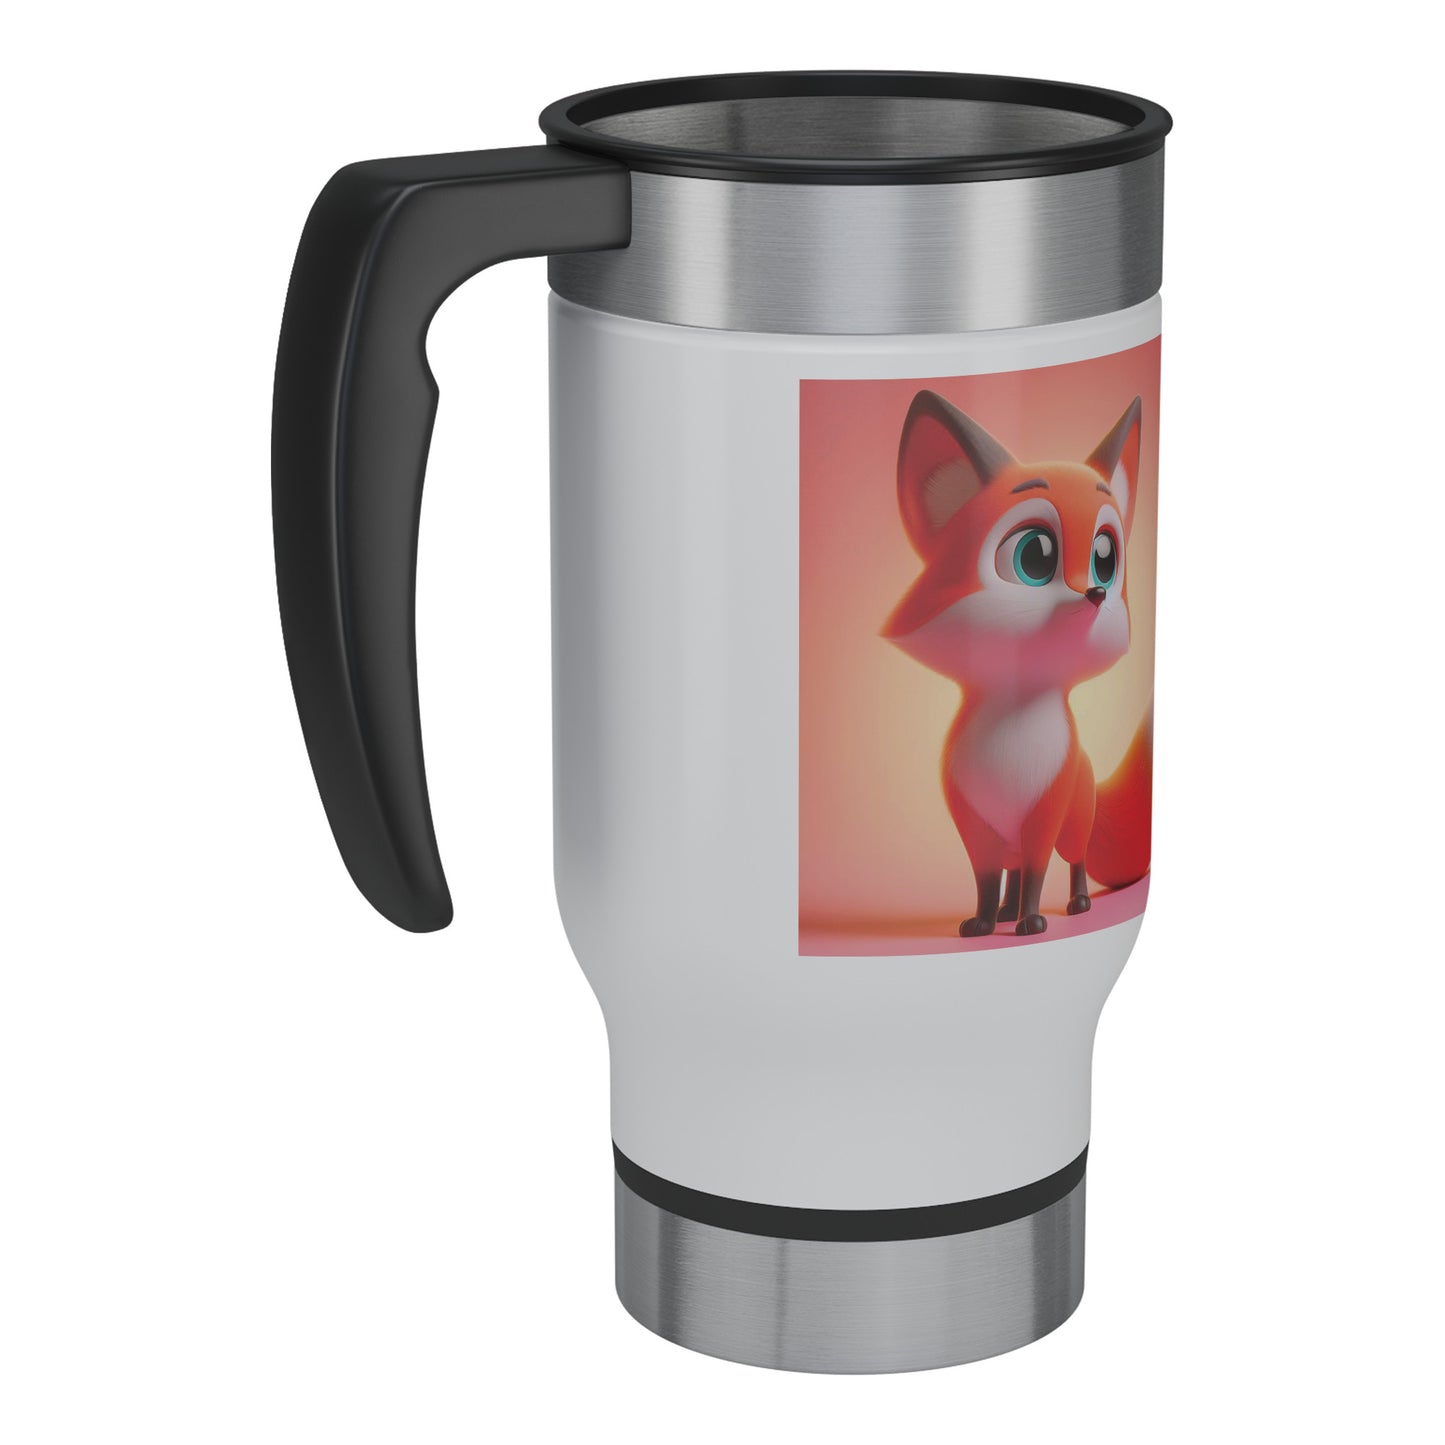 Cute & Adorable Mammals - 14oz Travel Mug - Fox #2